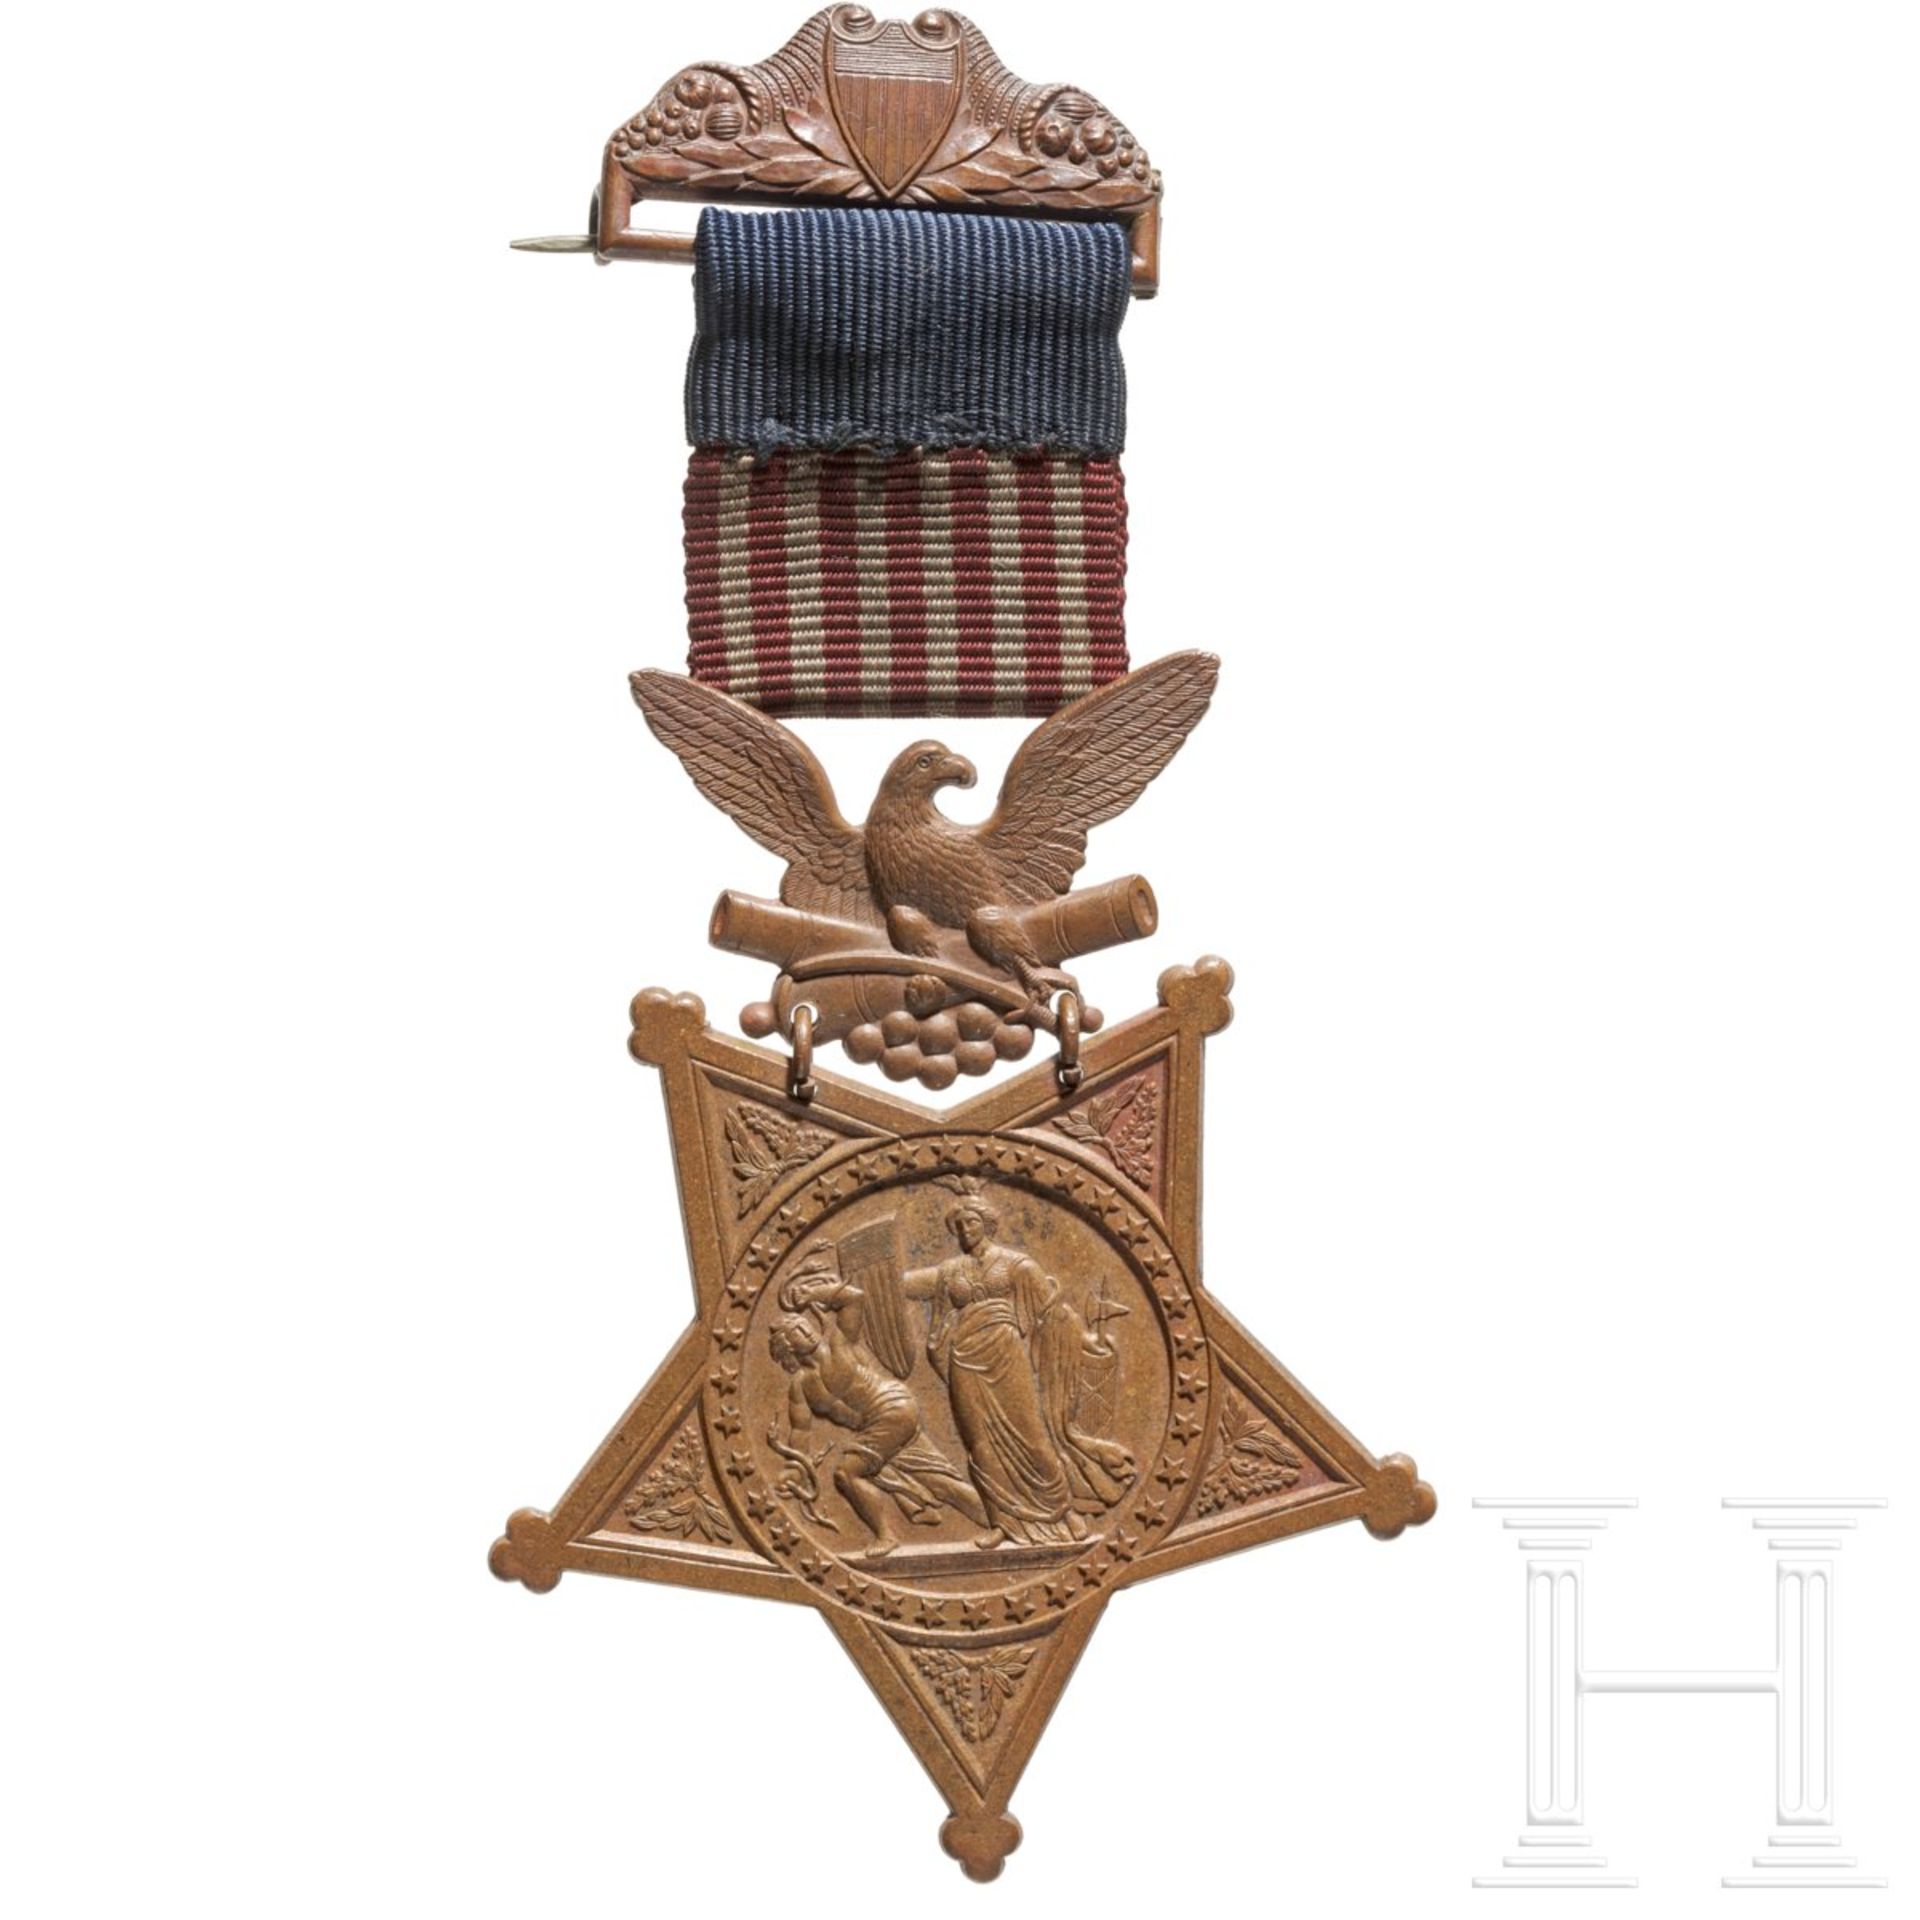 Sgt. John Karr – Congressional Medal of Honor als Mitglied der Ehrengarde für den verstorbenen Präsi - Bild 4 aus 11